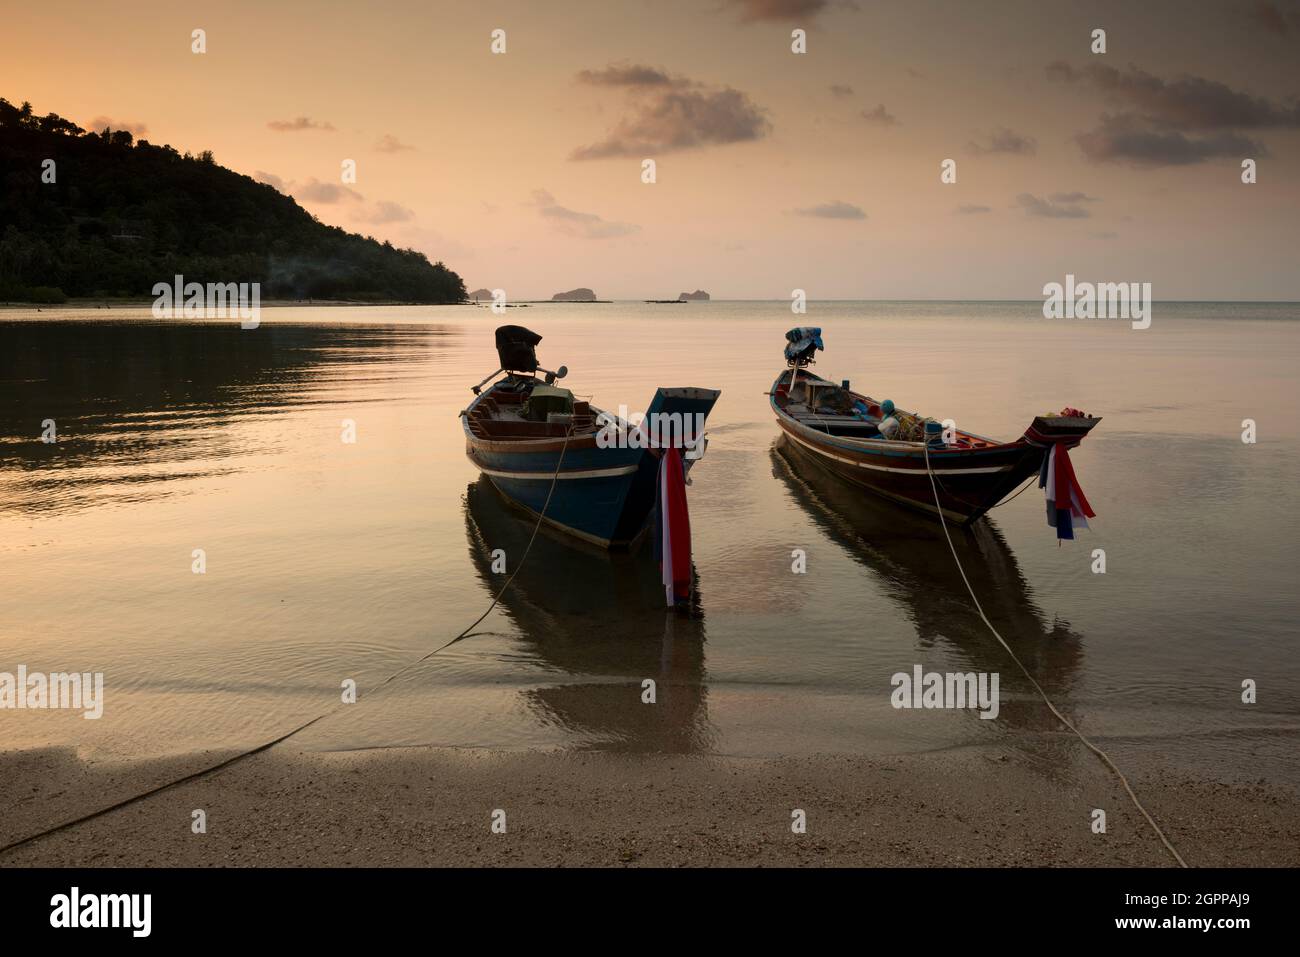 Thailandia, isola di Ko Samui, barche tradizionali ormeggiate sulla spiaggia al tramonto Foto Stock